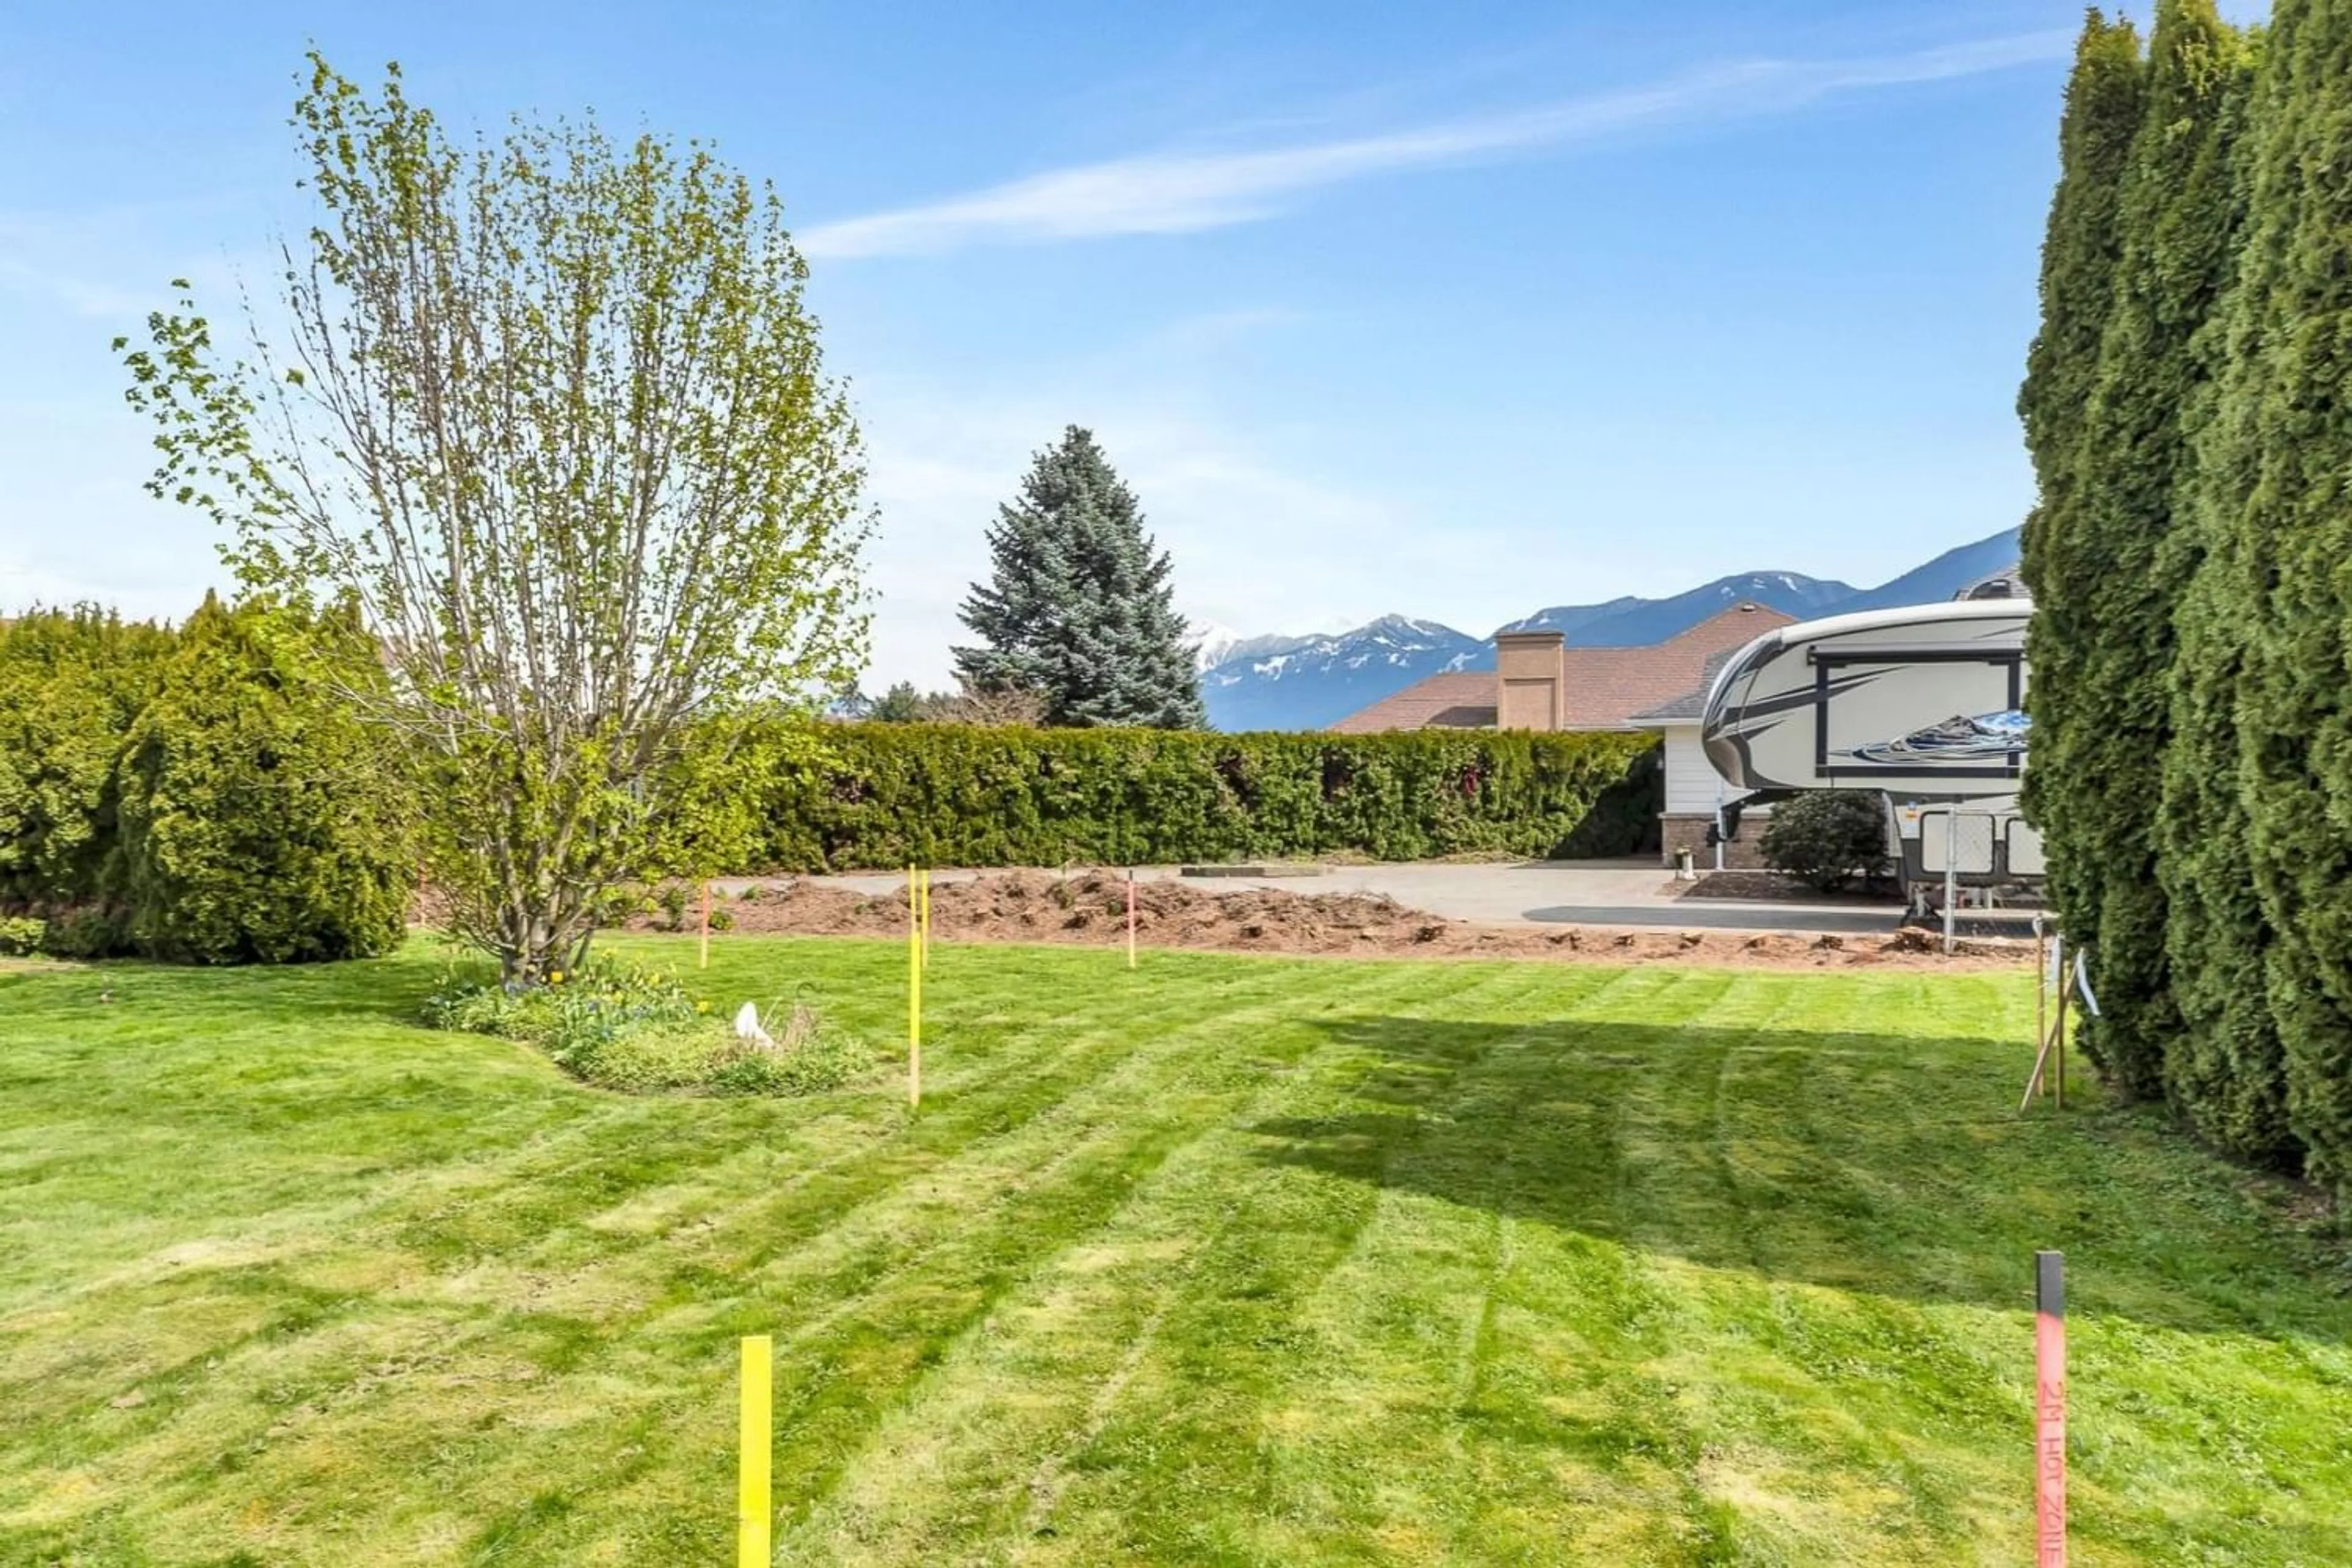 Fenced yard for 46290 ROY AVENUE, Chilliwack British Columbia V2R2W2